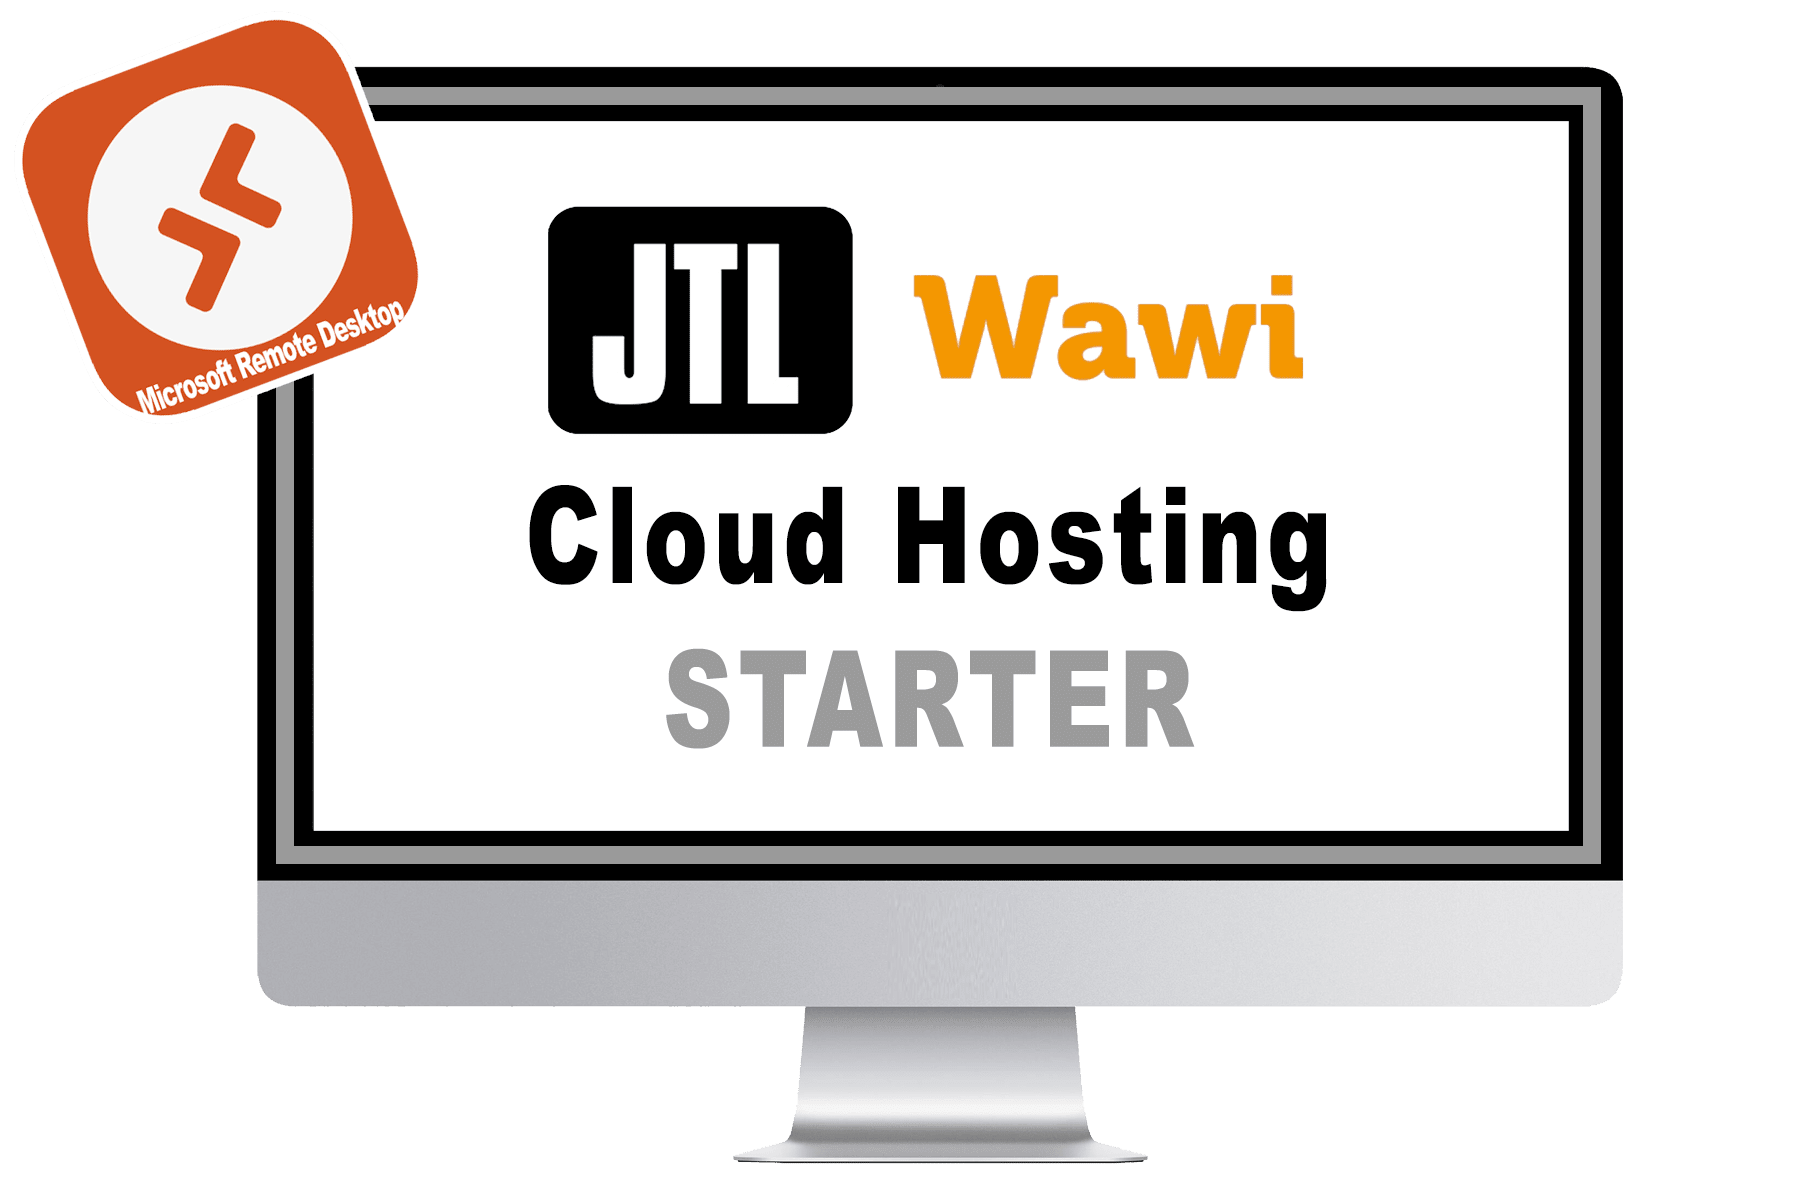 JTL-WAWI-Cloud-Hosting-Starter-Paket